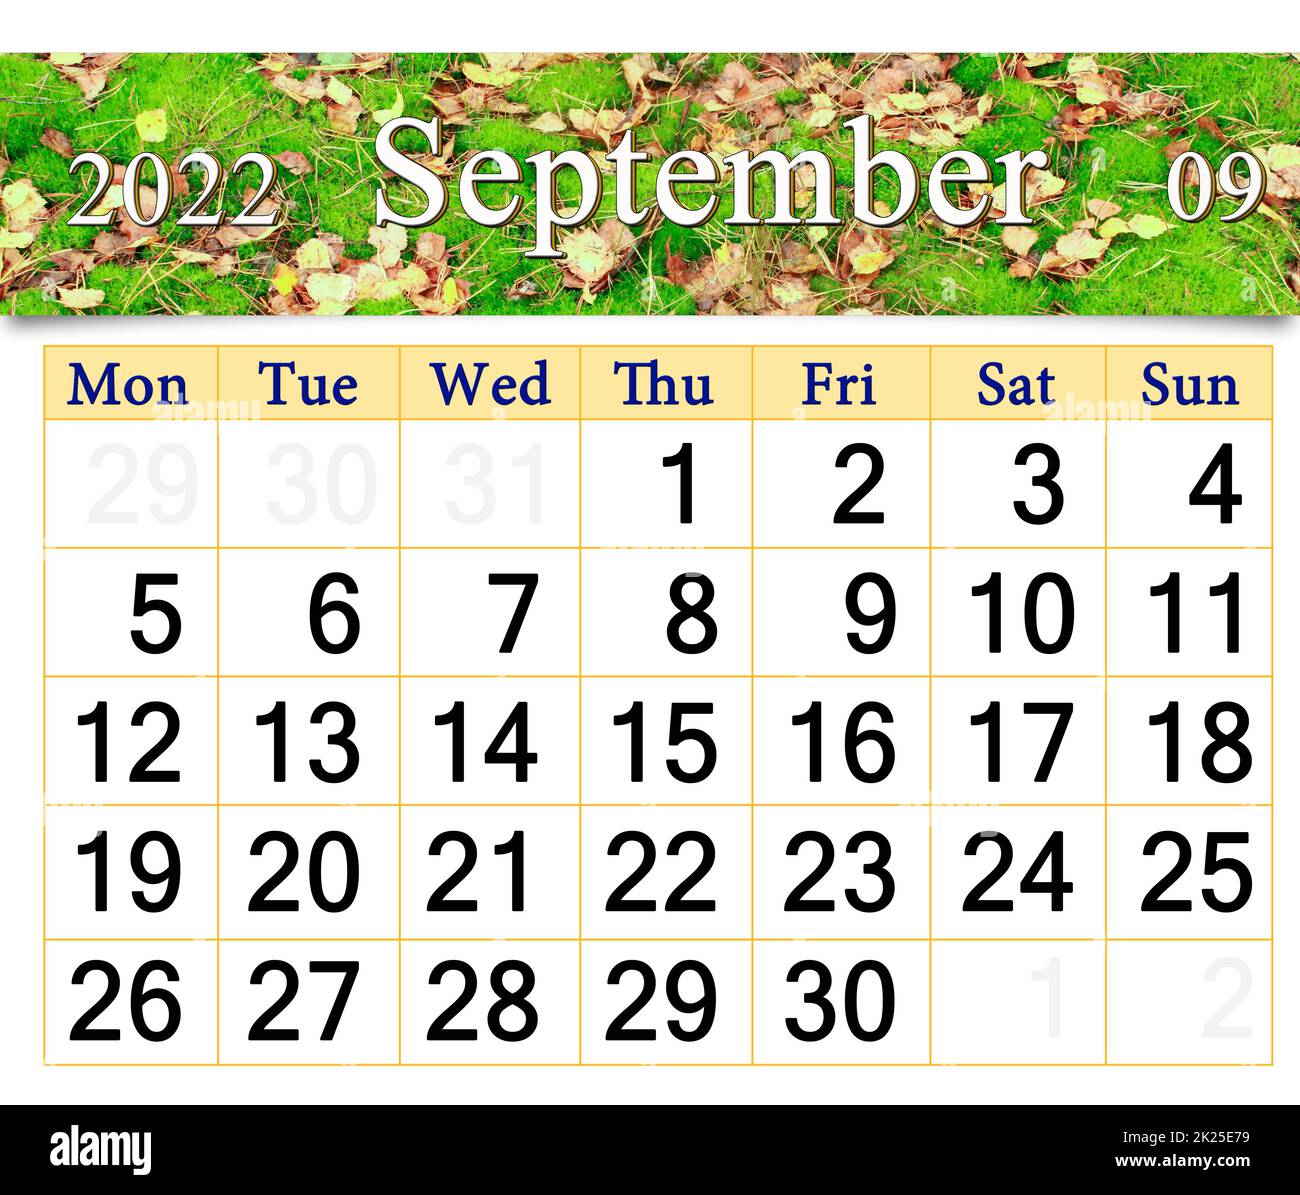 calendrier pour septembre 2022 avec des feuilles jaunes couchés sur de la mousse verte en forêt Banque D'Images